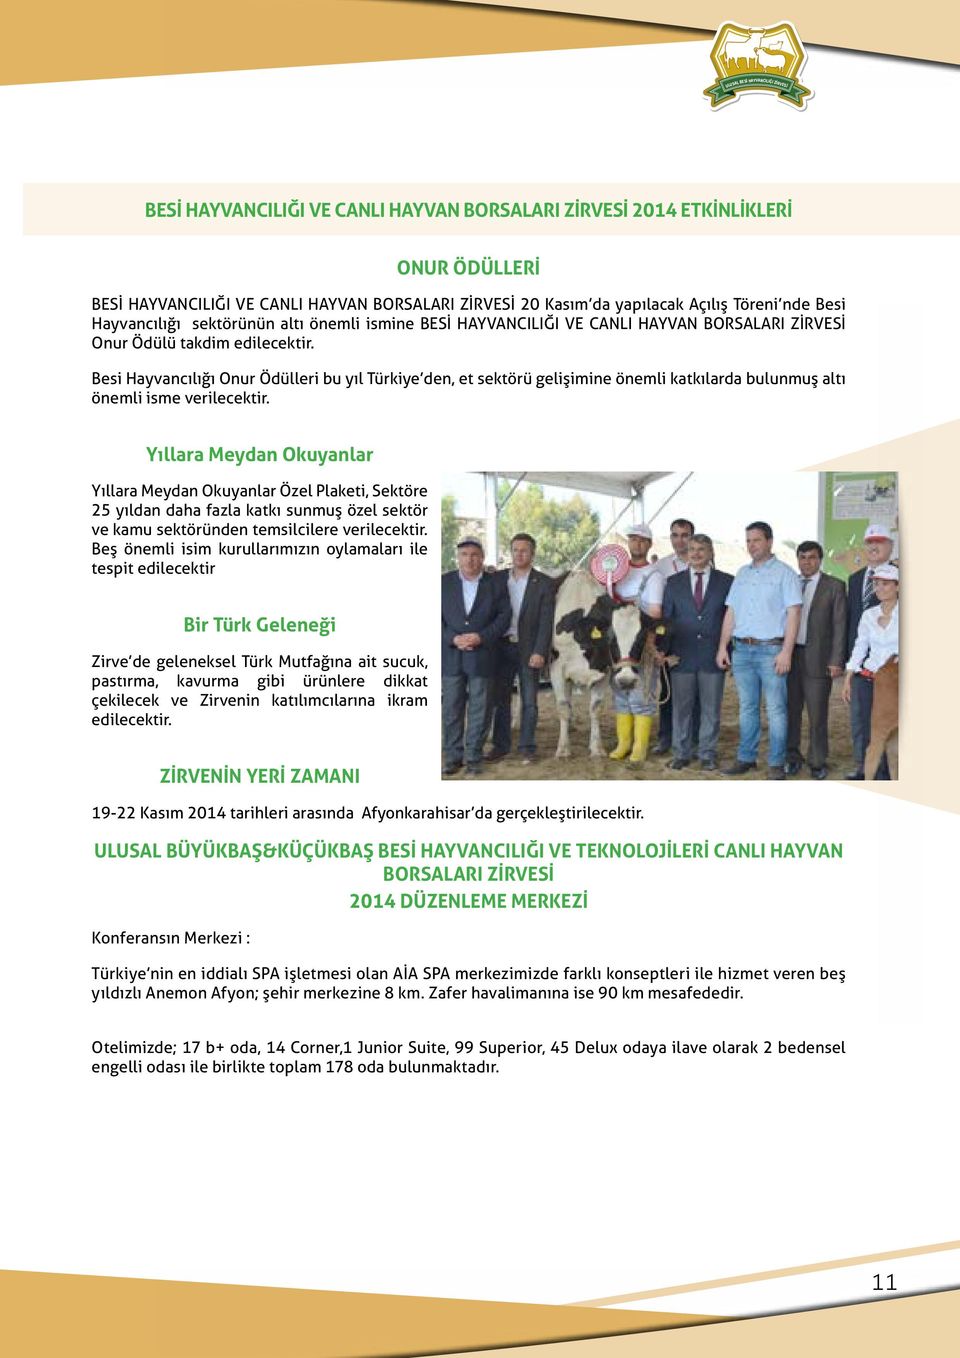 Besi Hayvancılığı Onur Ödülleri bu yıl Türkiye den, et sektörü gelişimine önemli katkılarda bulunmuş altı önemli isme verilecektir.